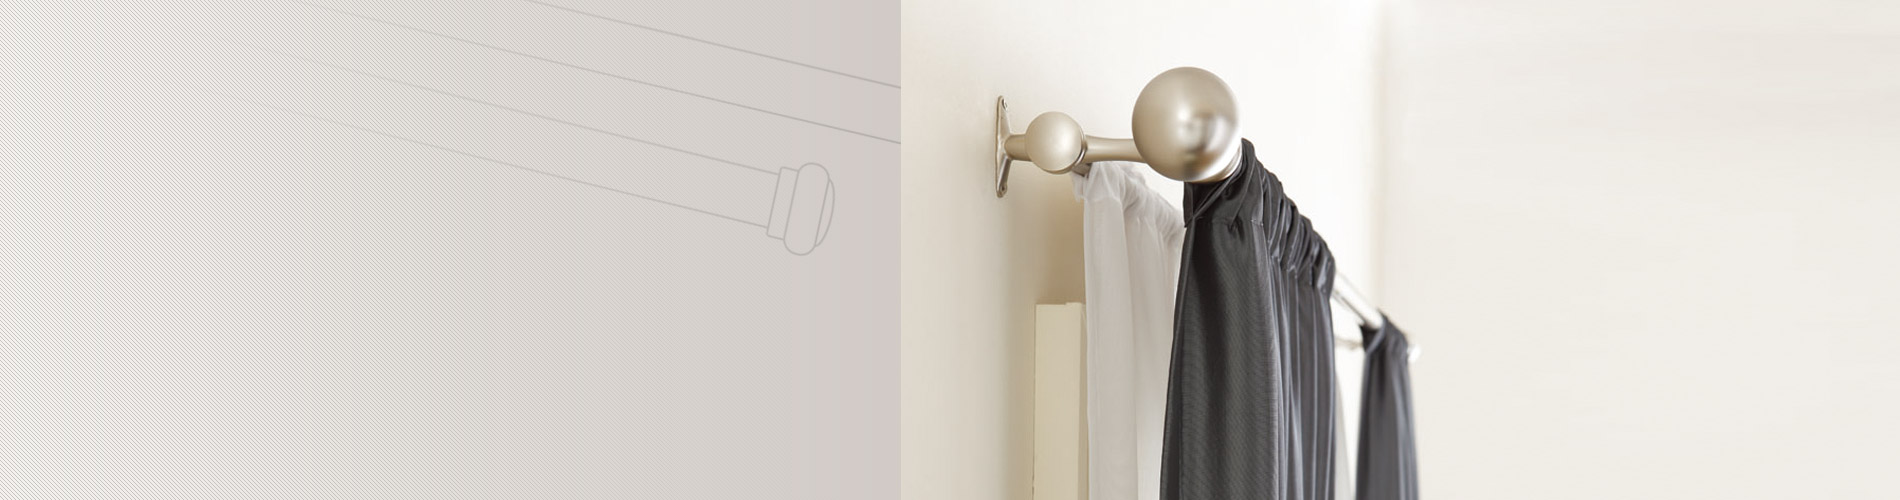 Карниз для штор завжди кріпиться на стіні за допомогою декоративних наконечників і кронштейнів. Він може працювати як телескопічне вудилище, одиночне вудилище, подвійне вудилище та вудилище з поворотною рукояткою.